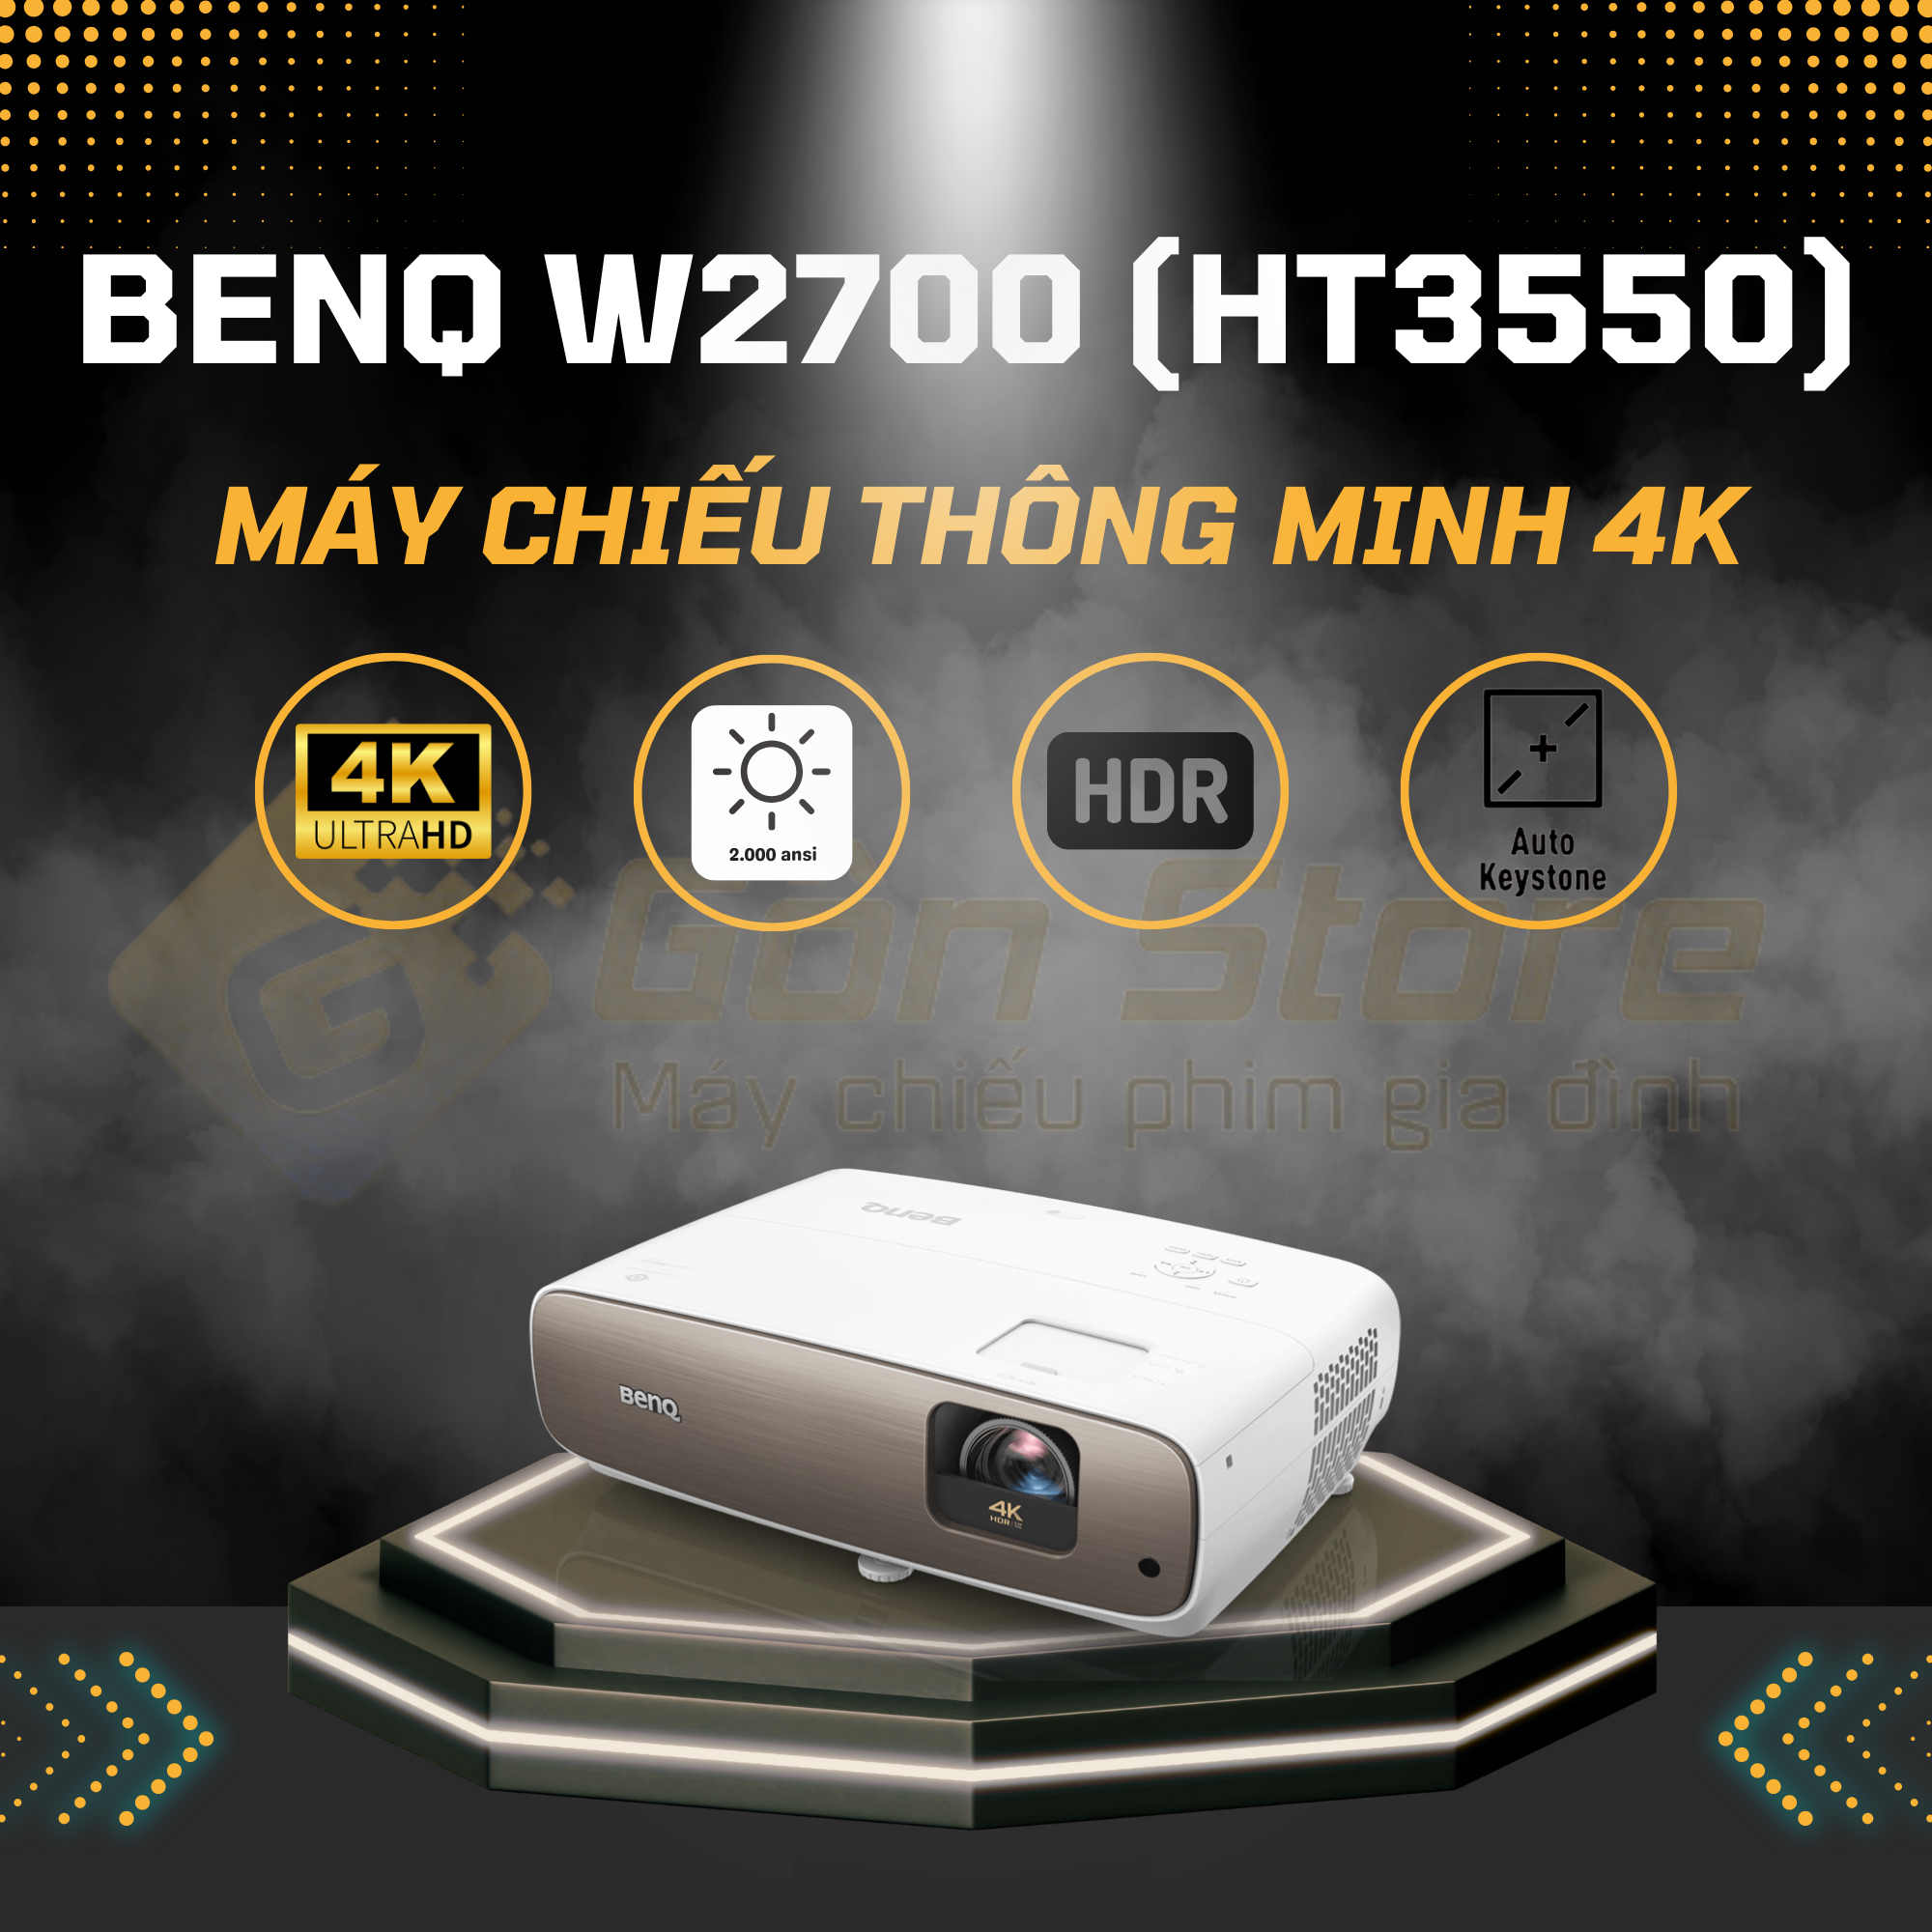 Máy chiếu BenQ W2700 (HT3550) giá tốt nhất tại Gôn Store HCM